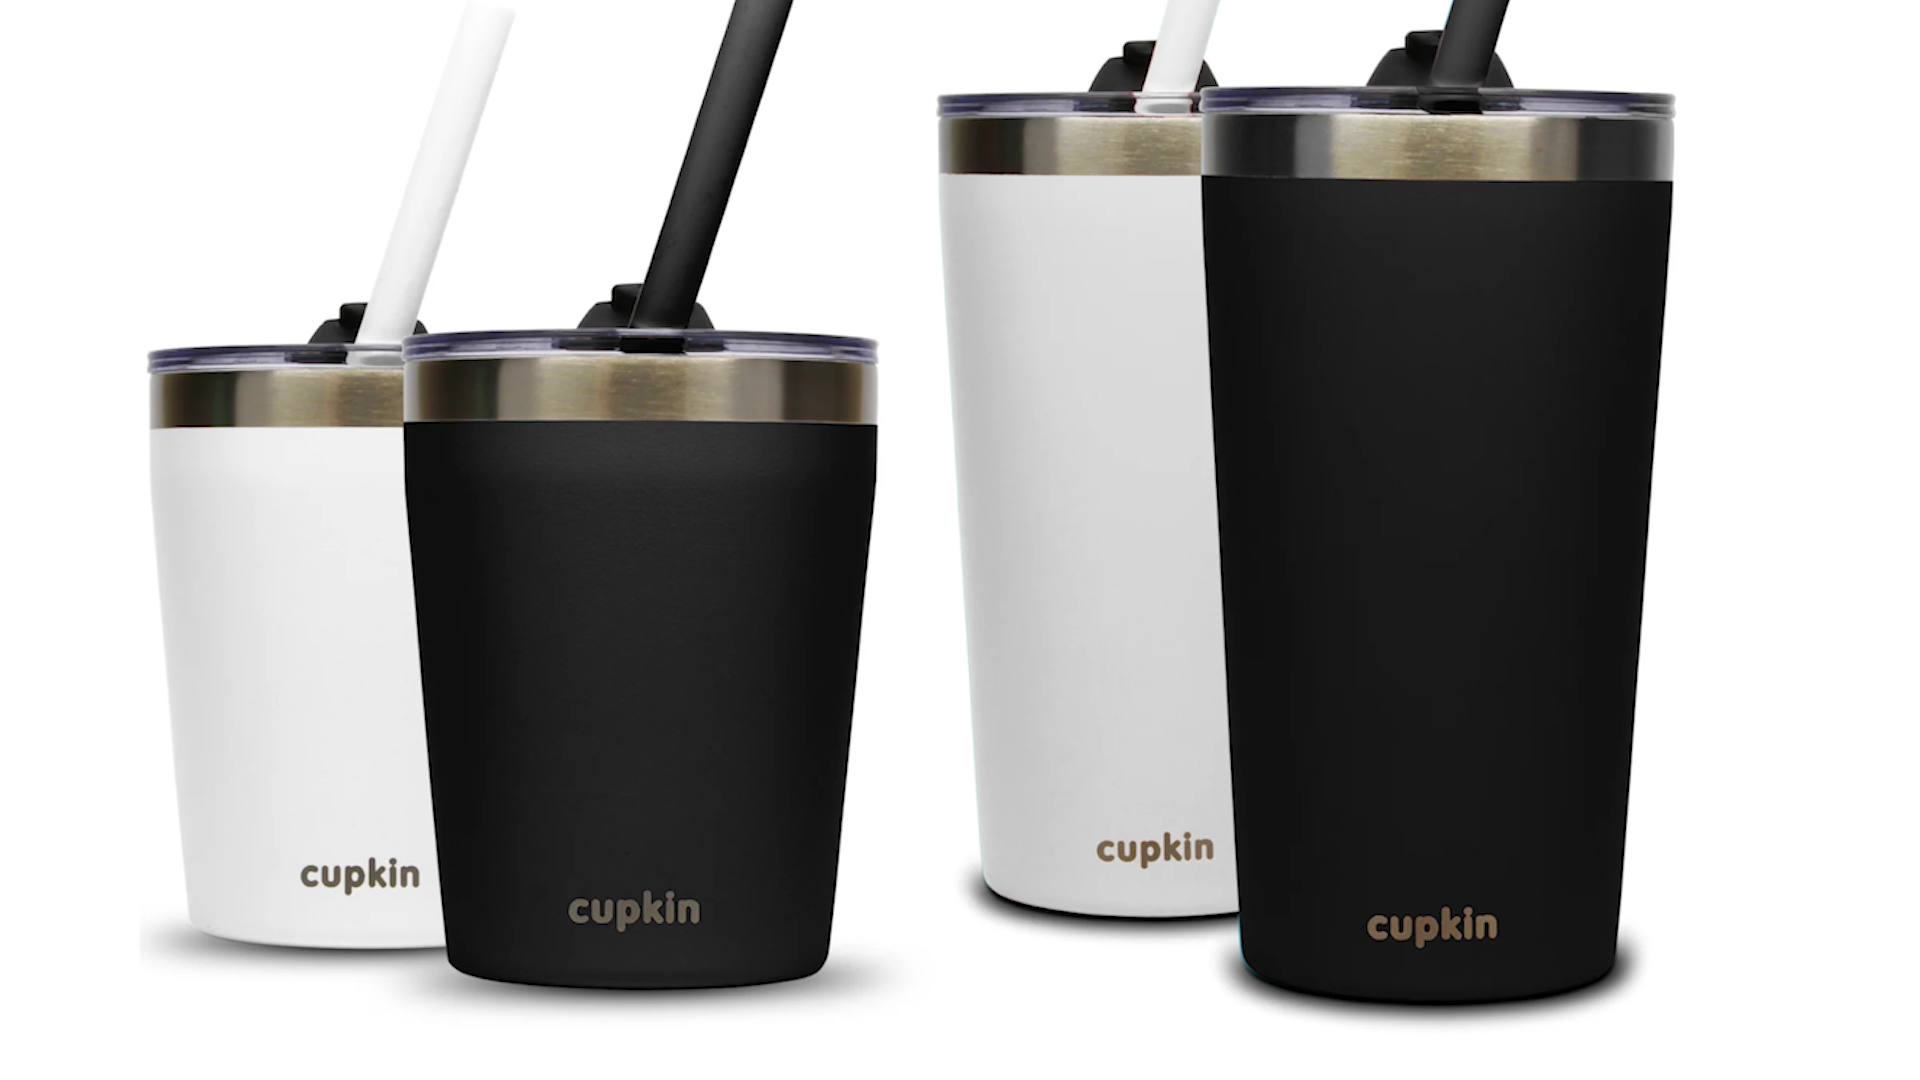 Cupkin recalls 346,000 children's cups over possible lead exposure